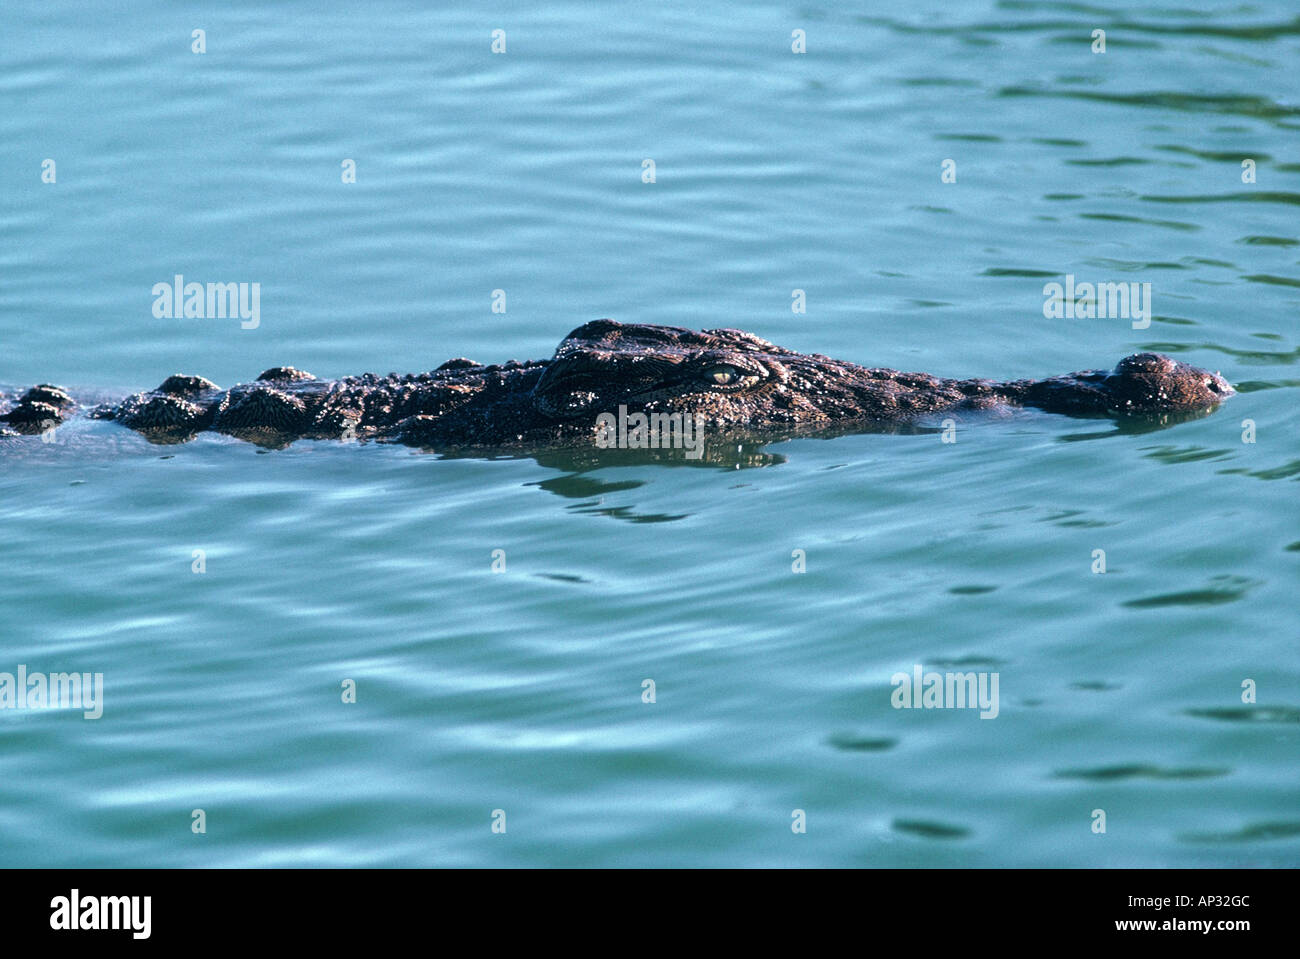 Crocodile du Nil Crocodylus niloticus Banque D'Images